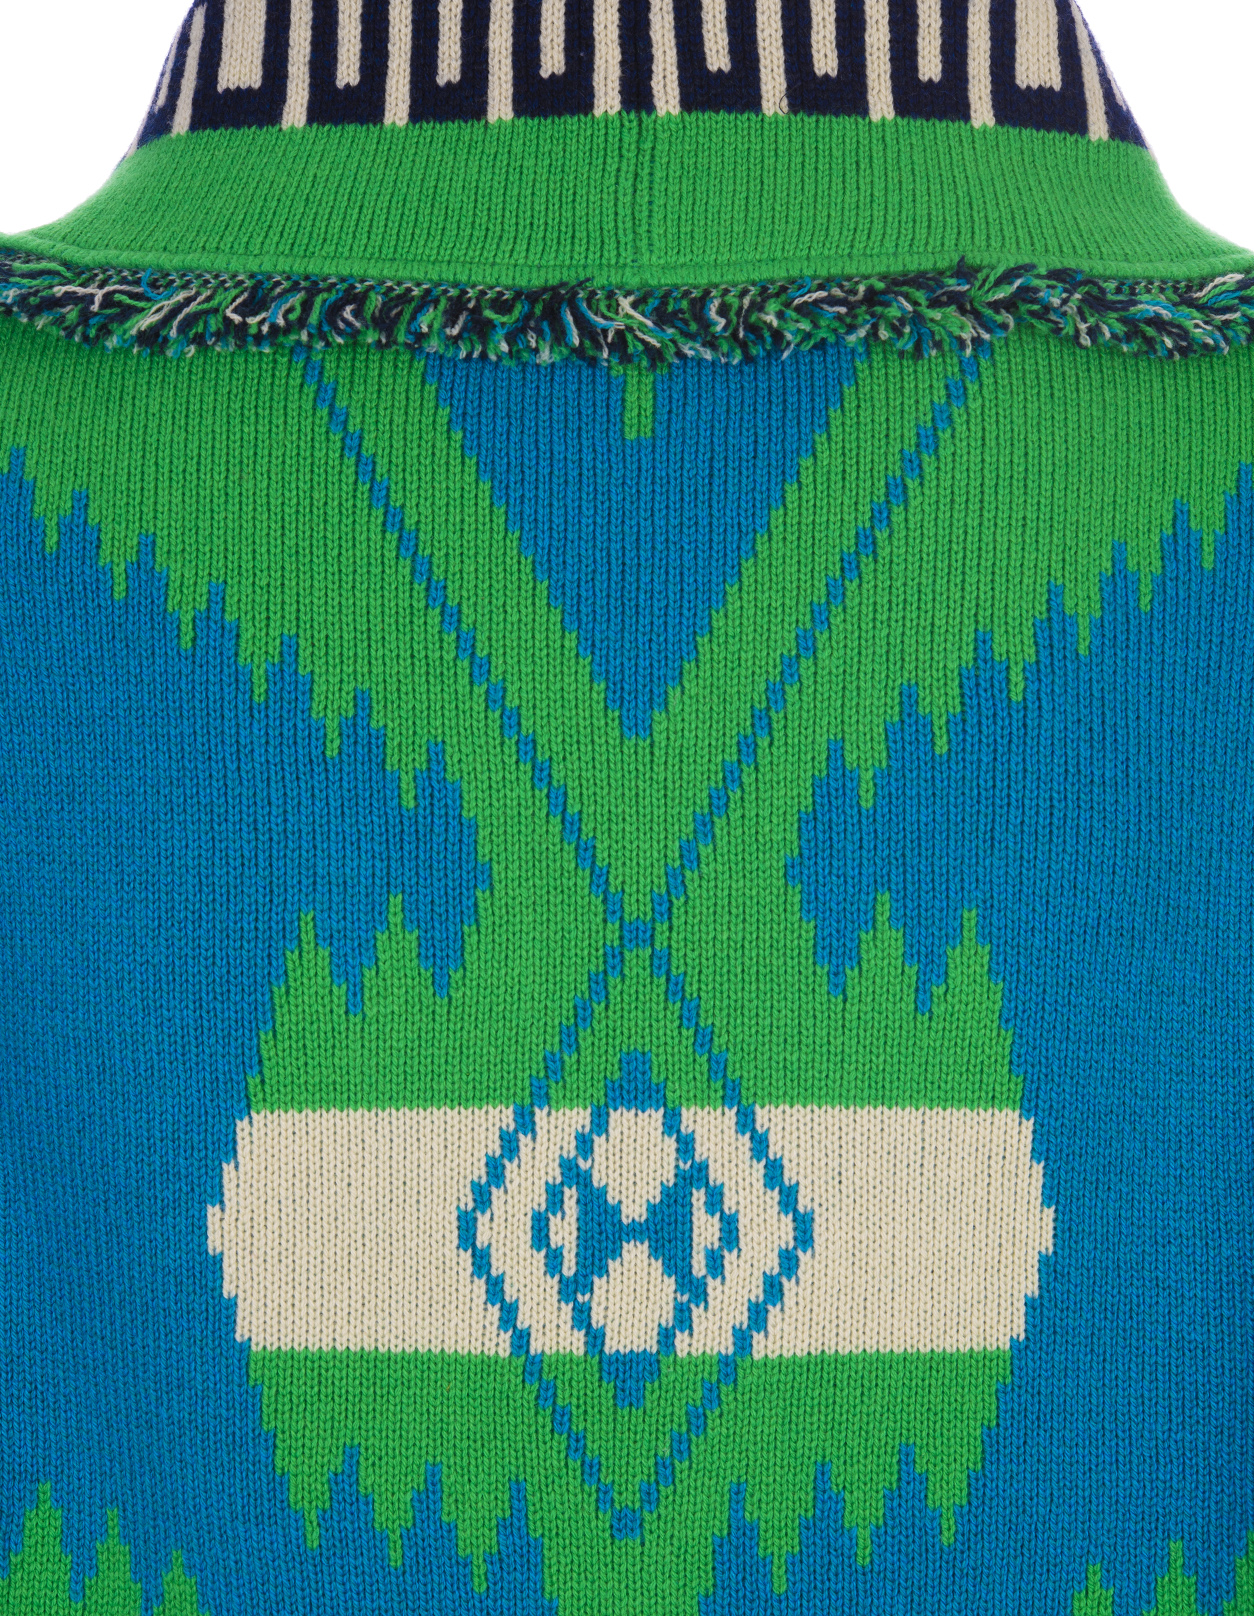 Icon Jacquard Cardigan In Blue - Green Flash ALANUI | LMHB030S23KNI0014570